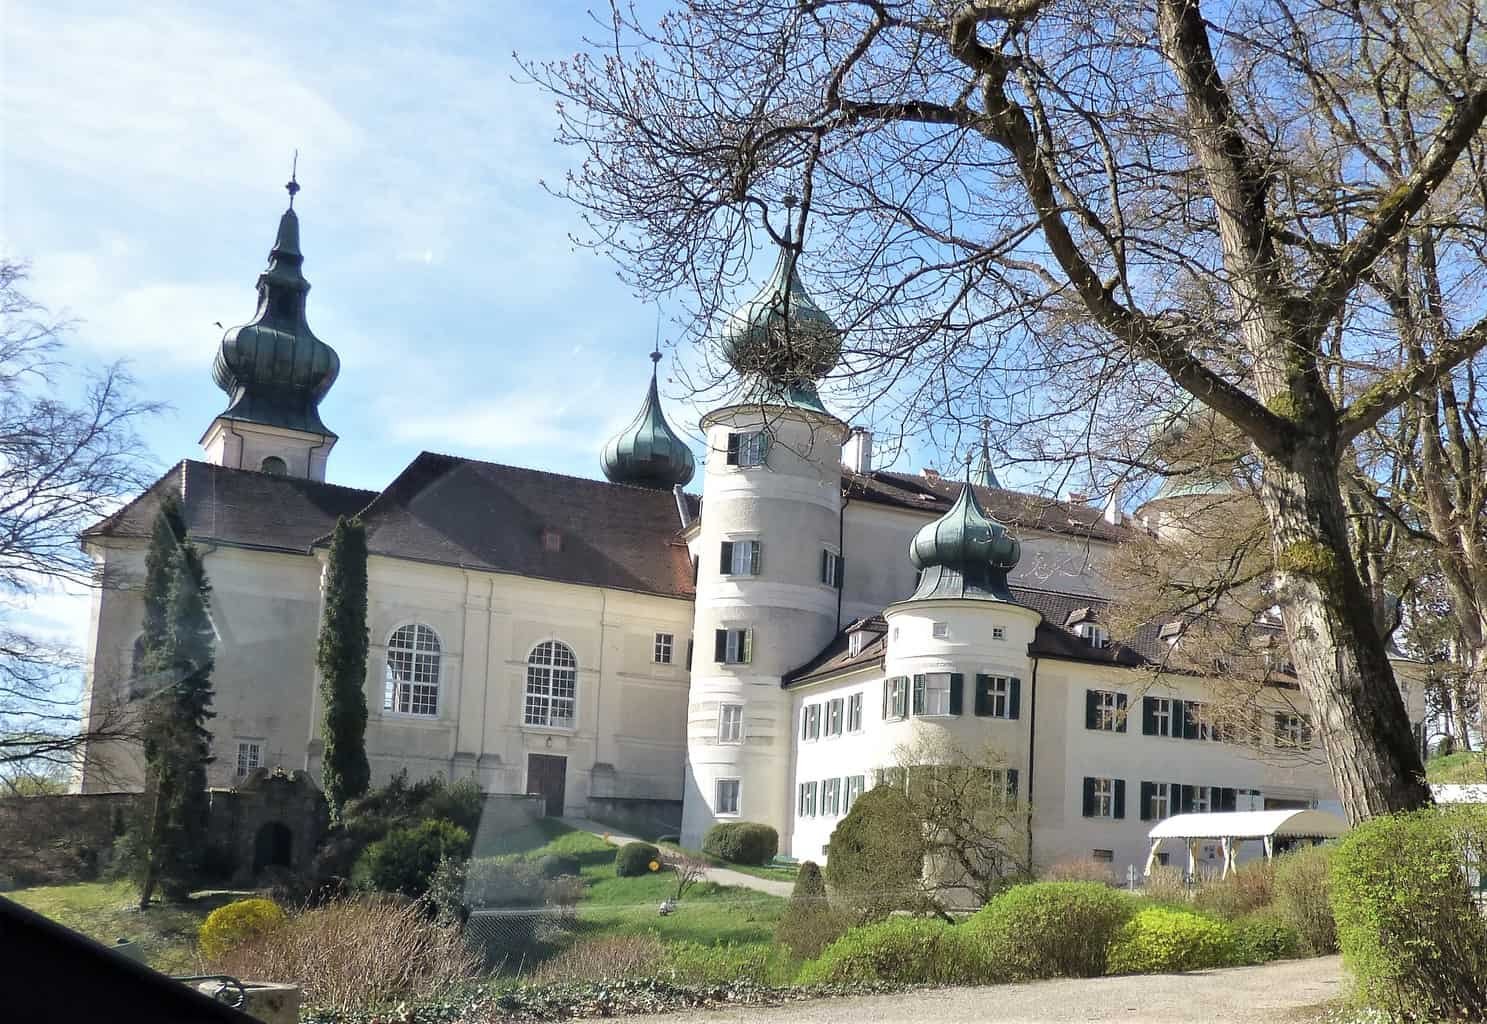 the castle franz